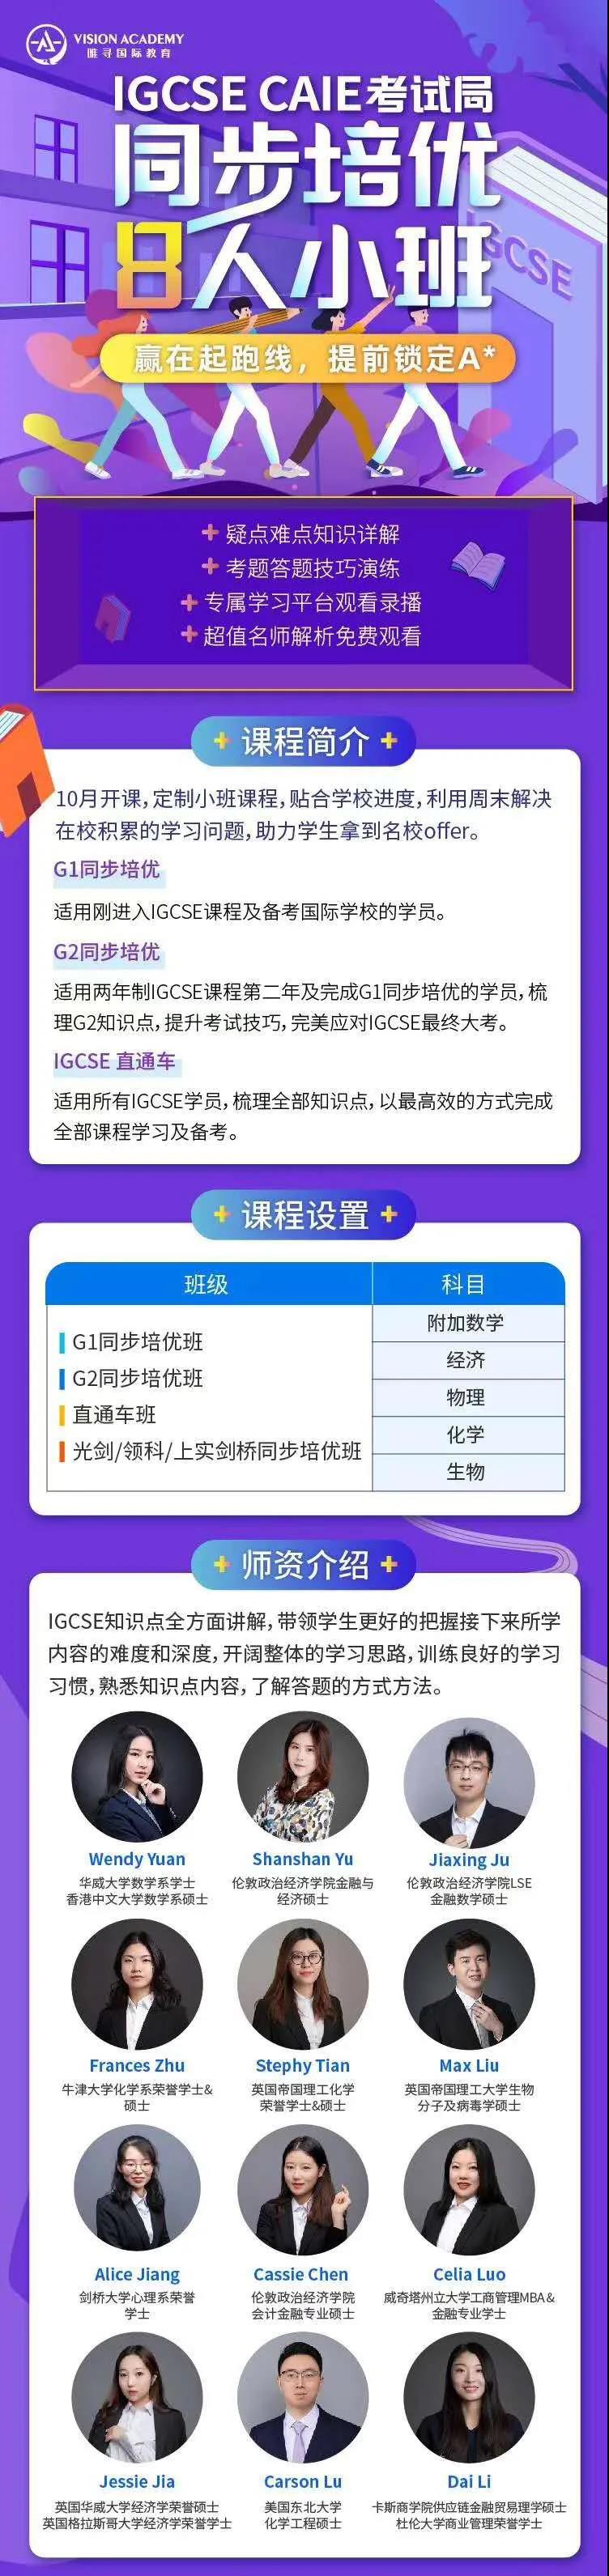 EDEXCEL IGCSE考试时间介绍 中文、历史等10个科目的考法有重大变化内容图片_31